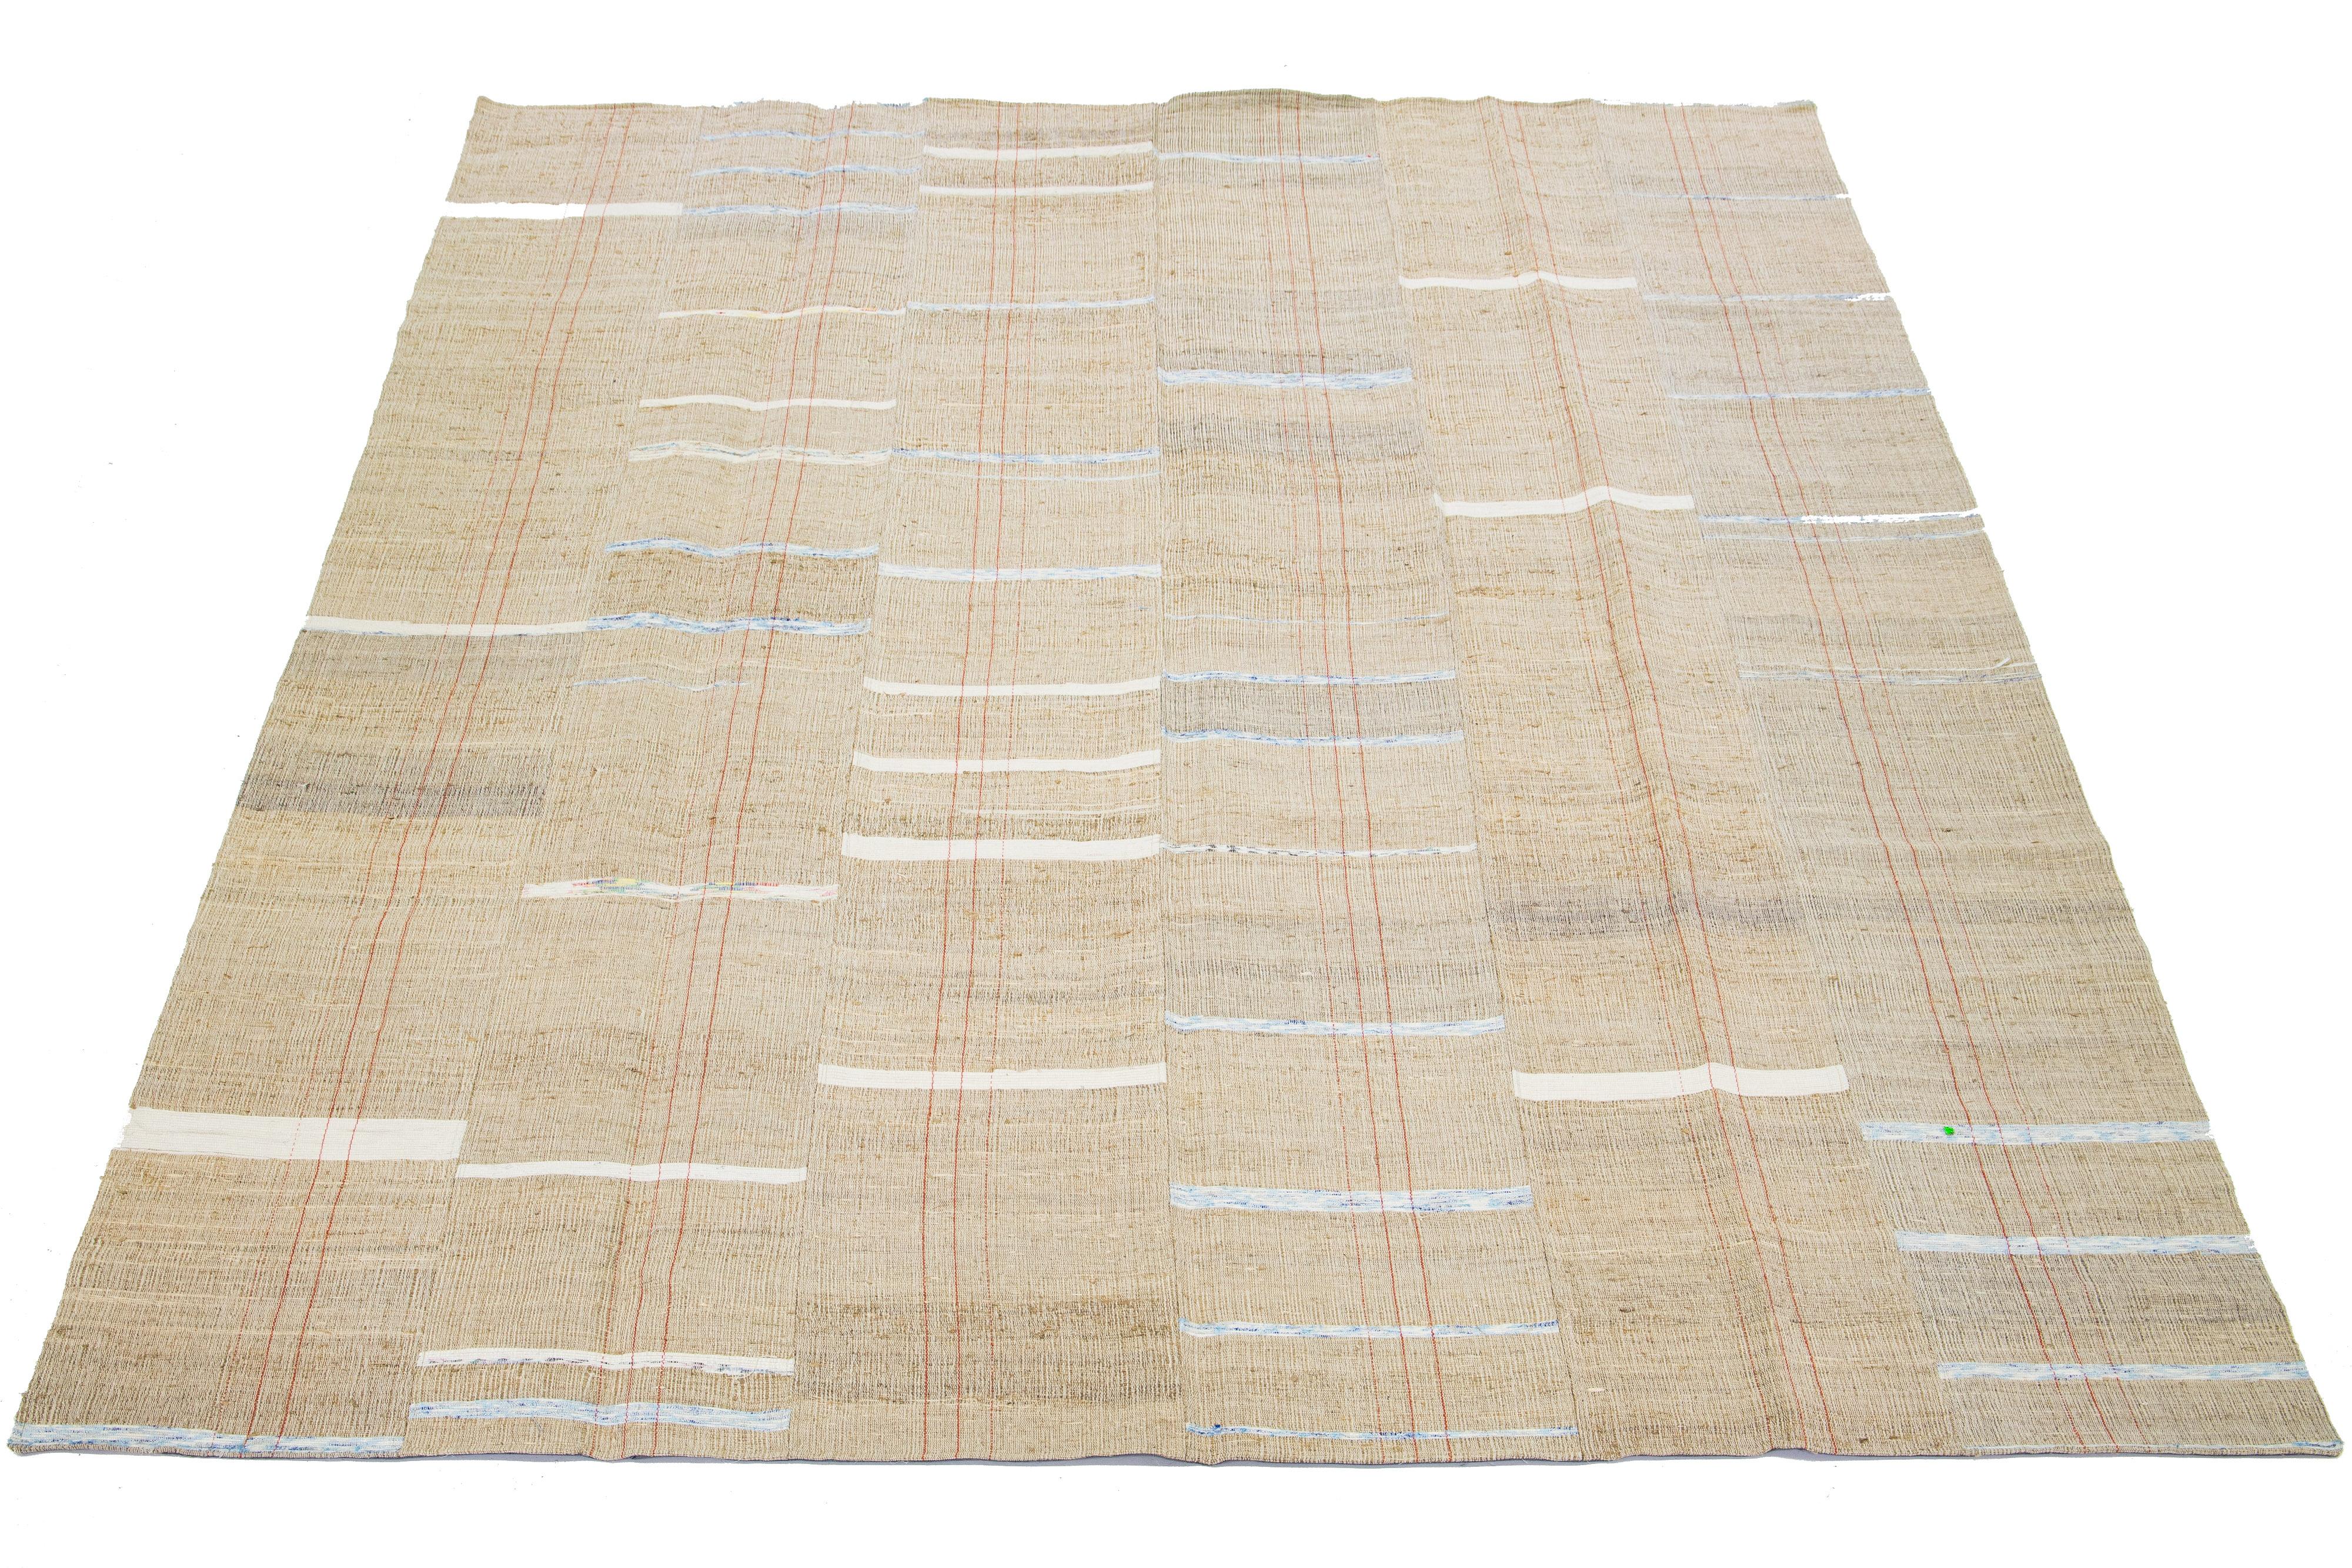 Ce tapis indien présente un tissage plat contemporain de type Rug & Kilim, réalisé en laine. Le tapis présente un champ beige avec un motif rayé dans les tons blanc, bleu et rouille.

Ce tapis mesure 9'1